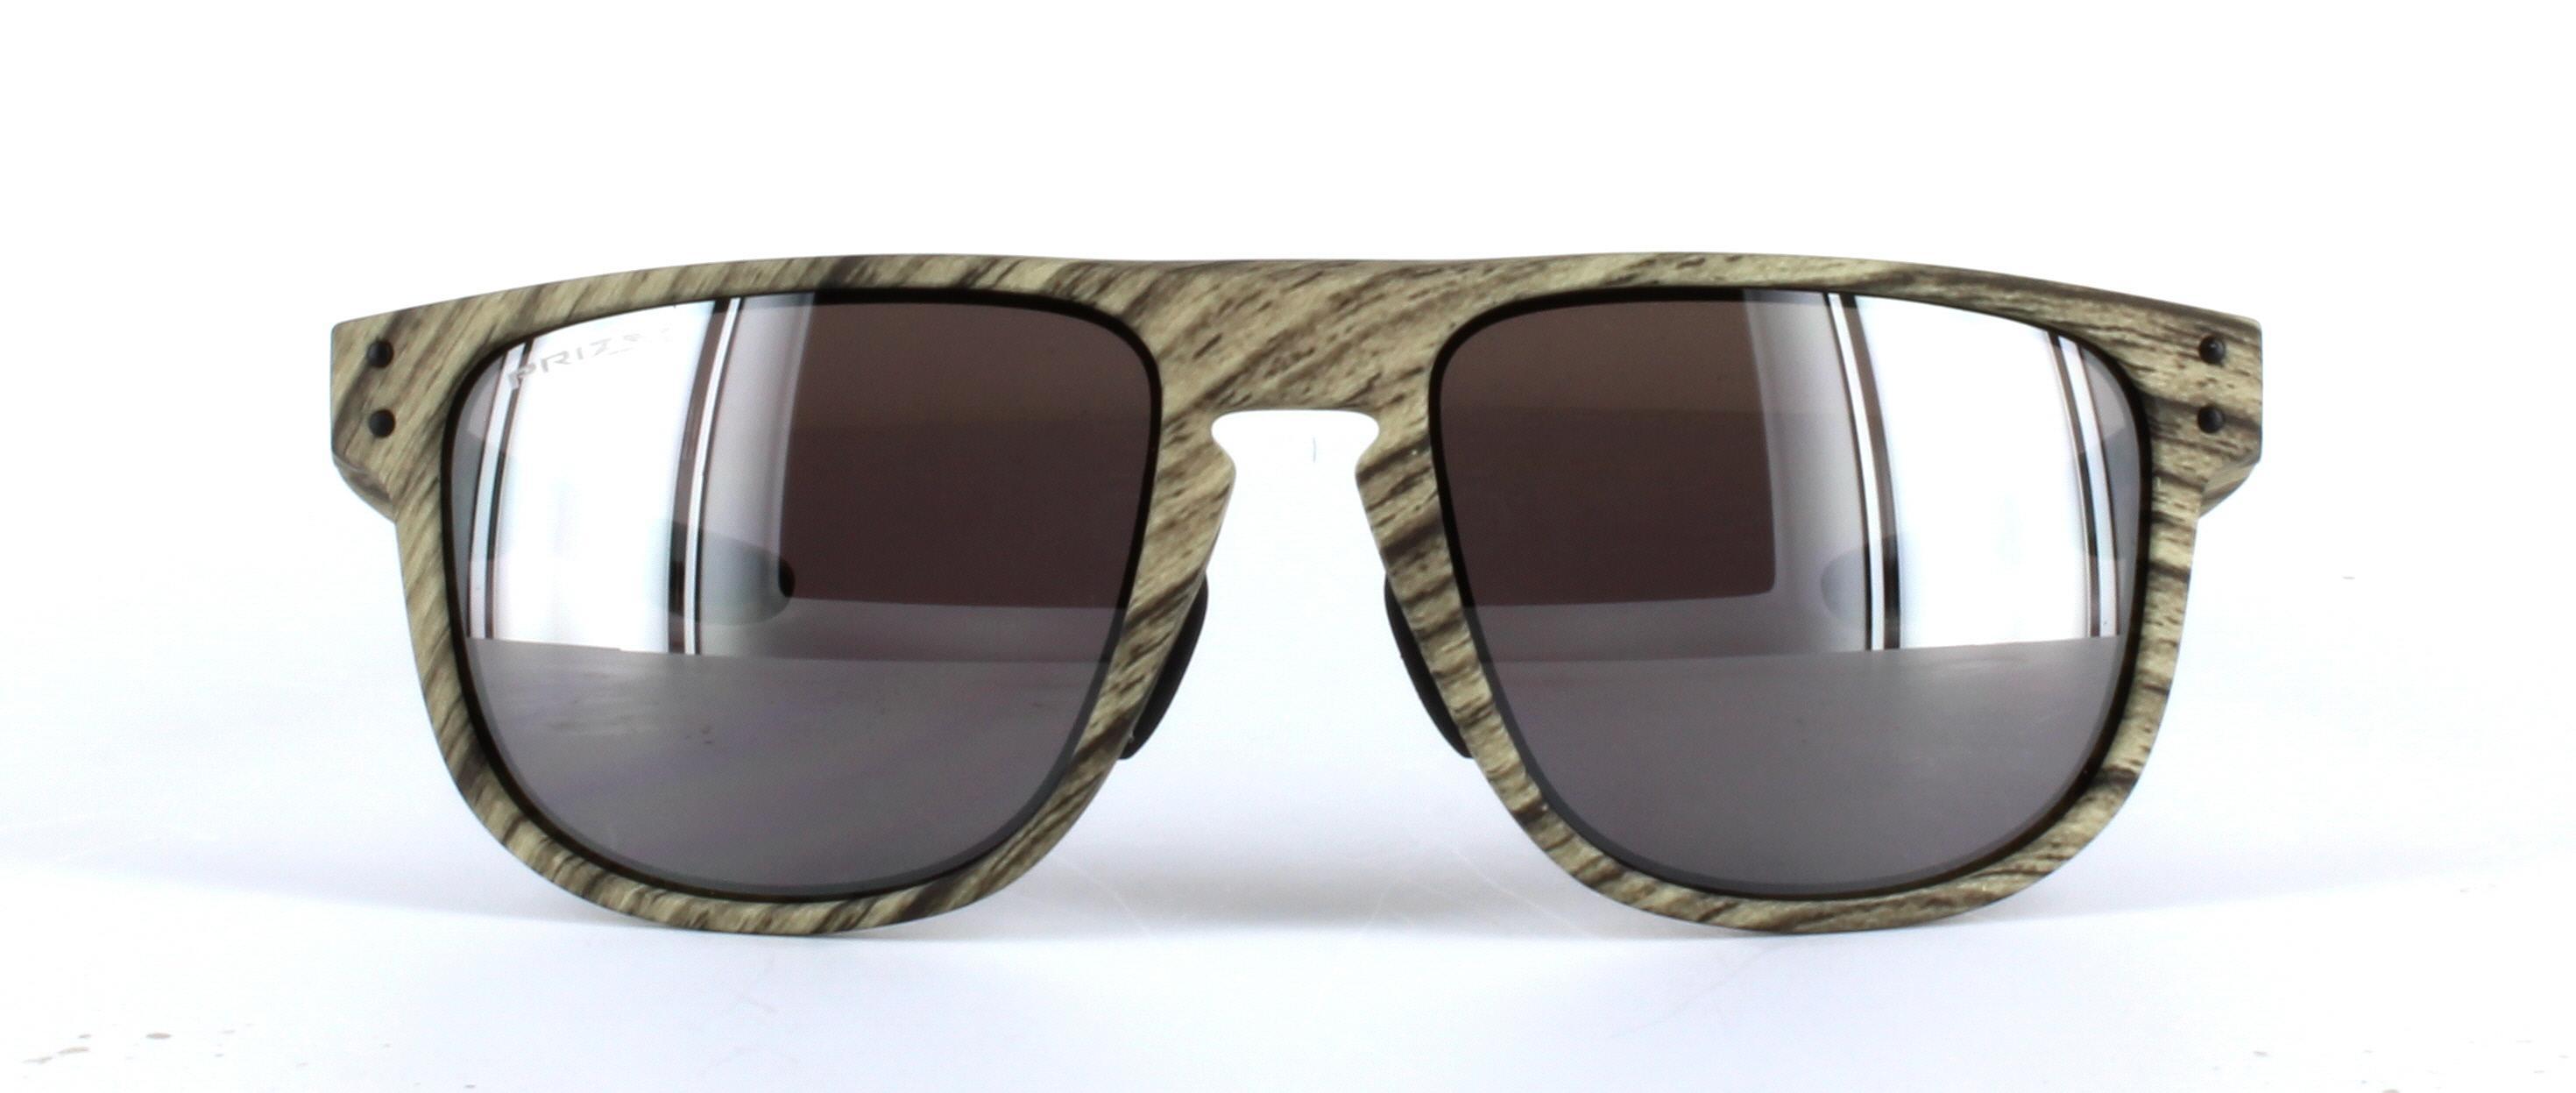 Unisex Sunglasses - Wood Effect 